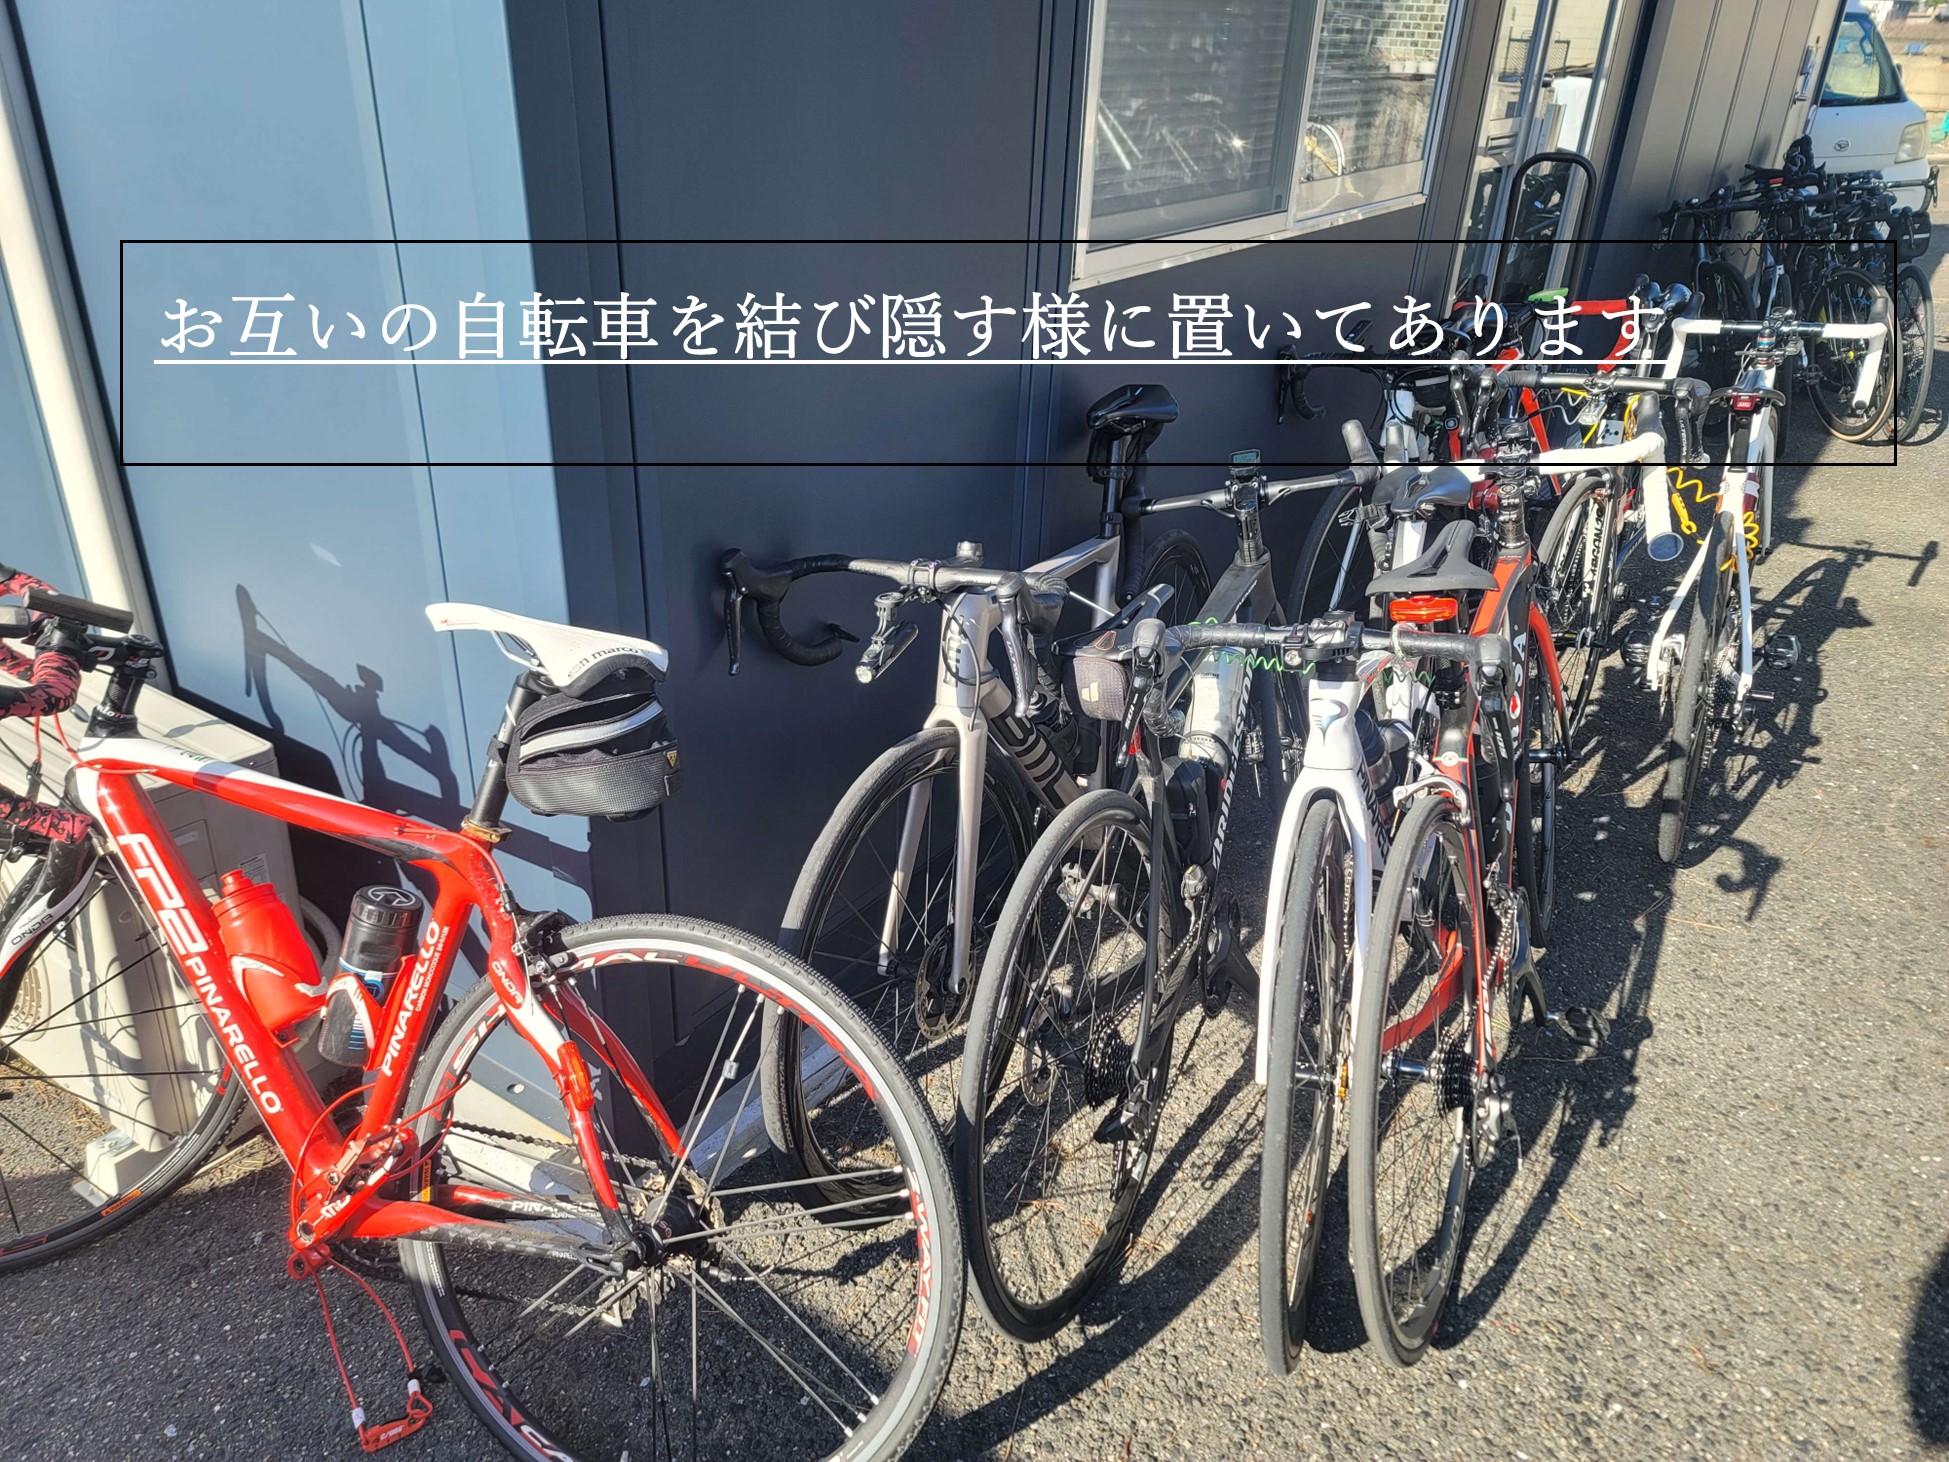 https://www.oco-s.jp/data/ec/980/自転車の惨状２.jpg